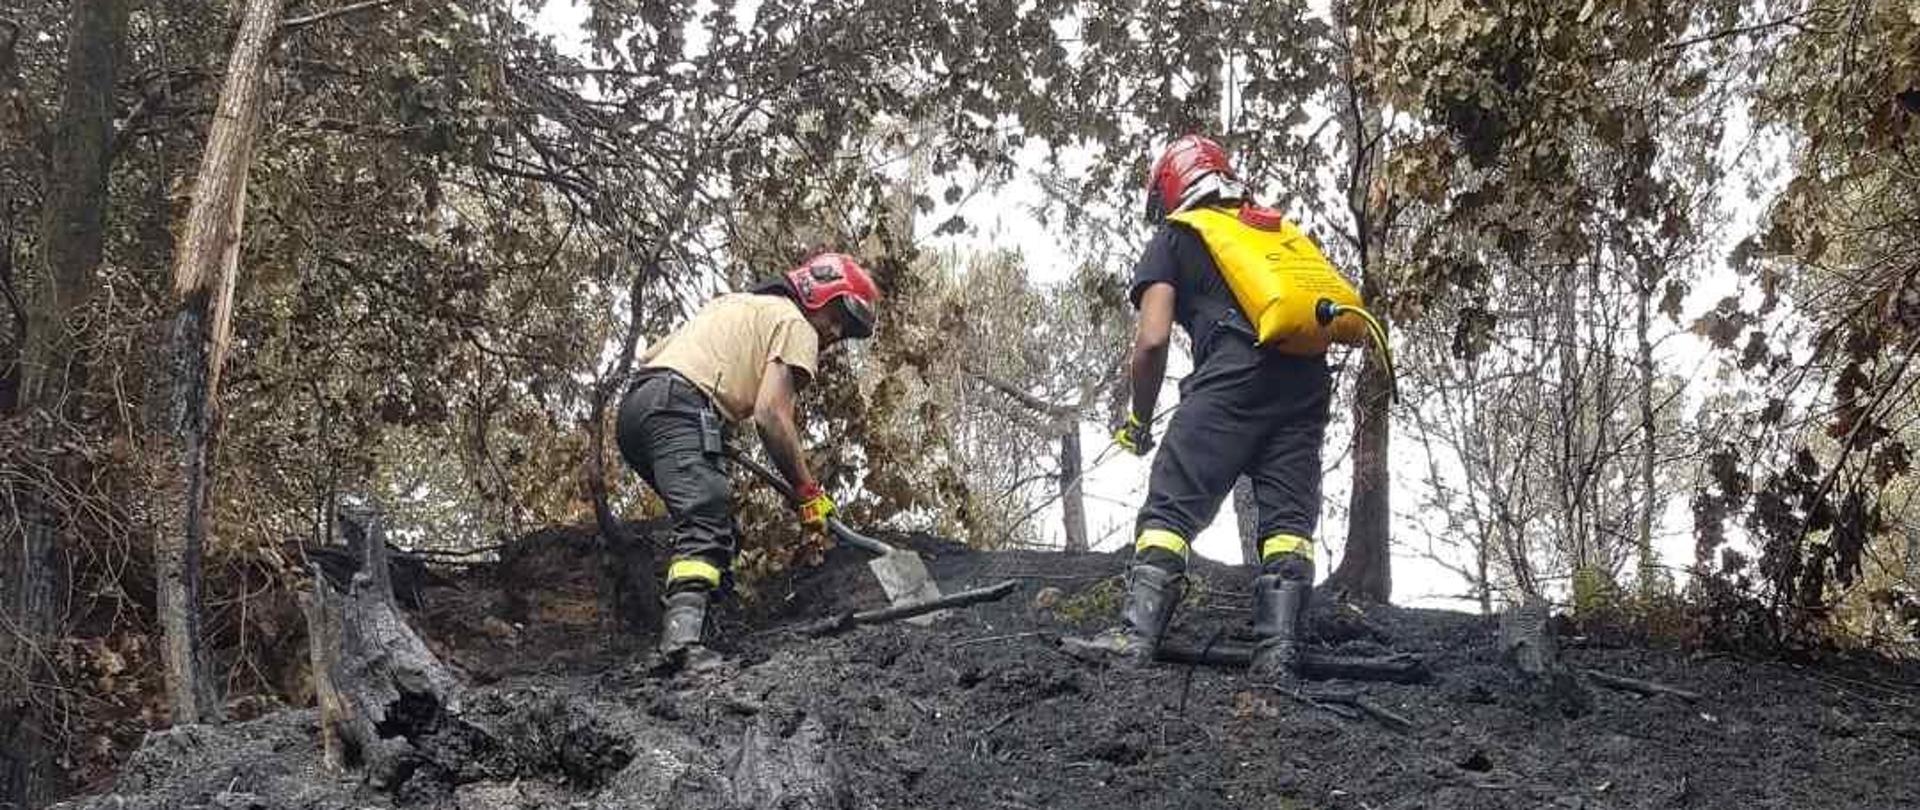 Dwóch strażaków przemieszcza się po spalonej ziemi i dogasza pogorzelisko szpadlami